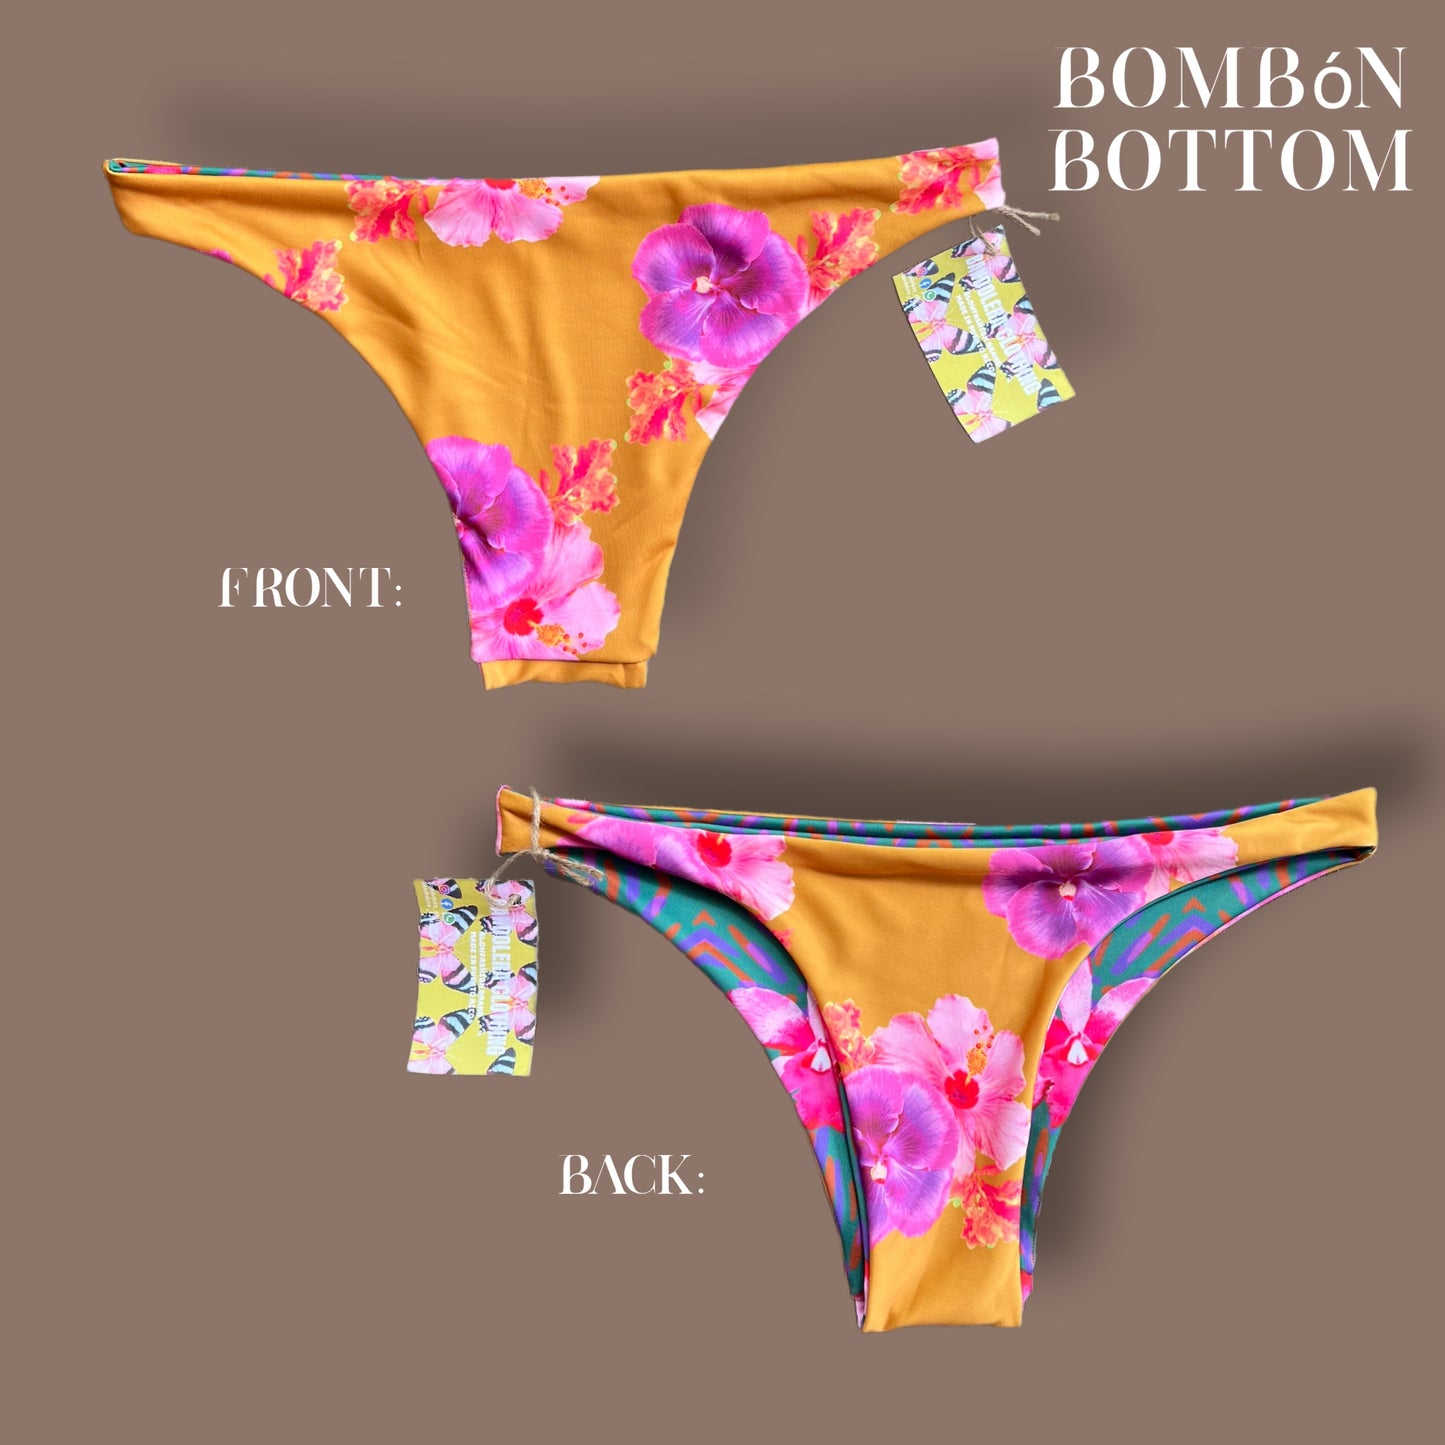 Bombón Bottom ( solo bottom)